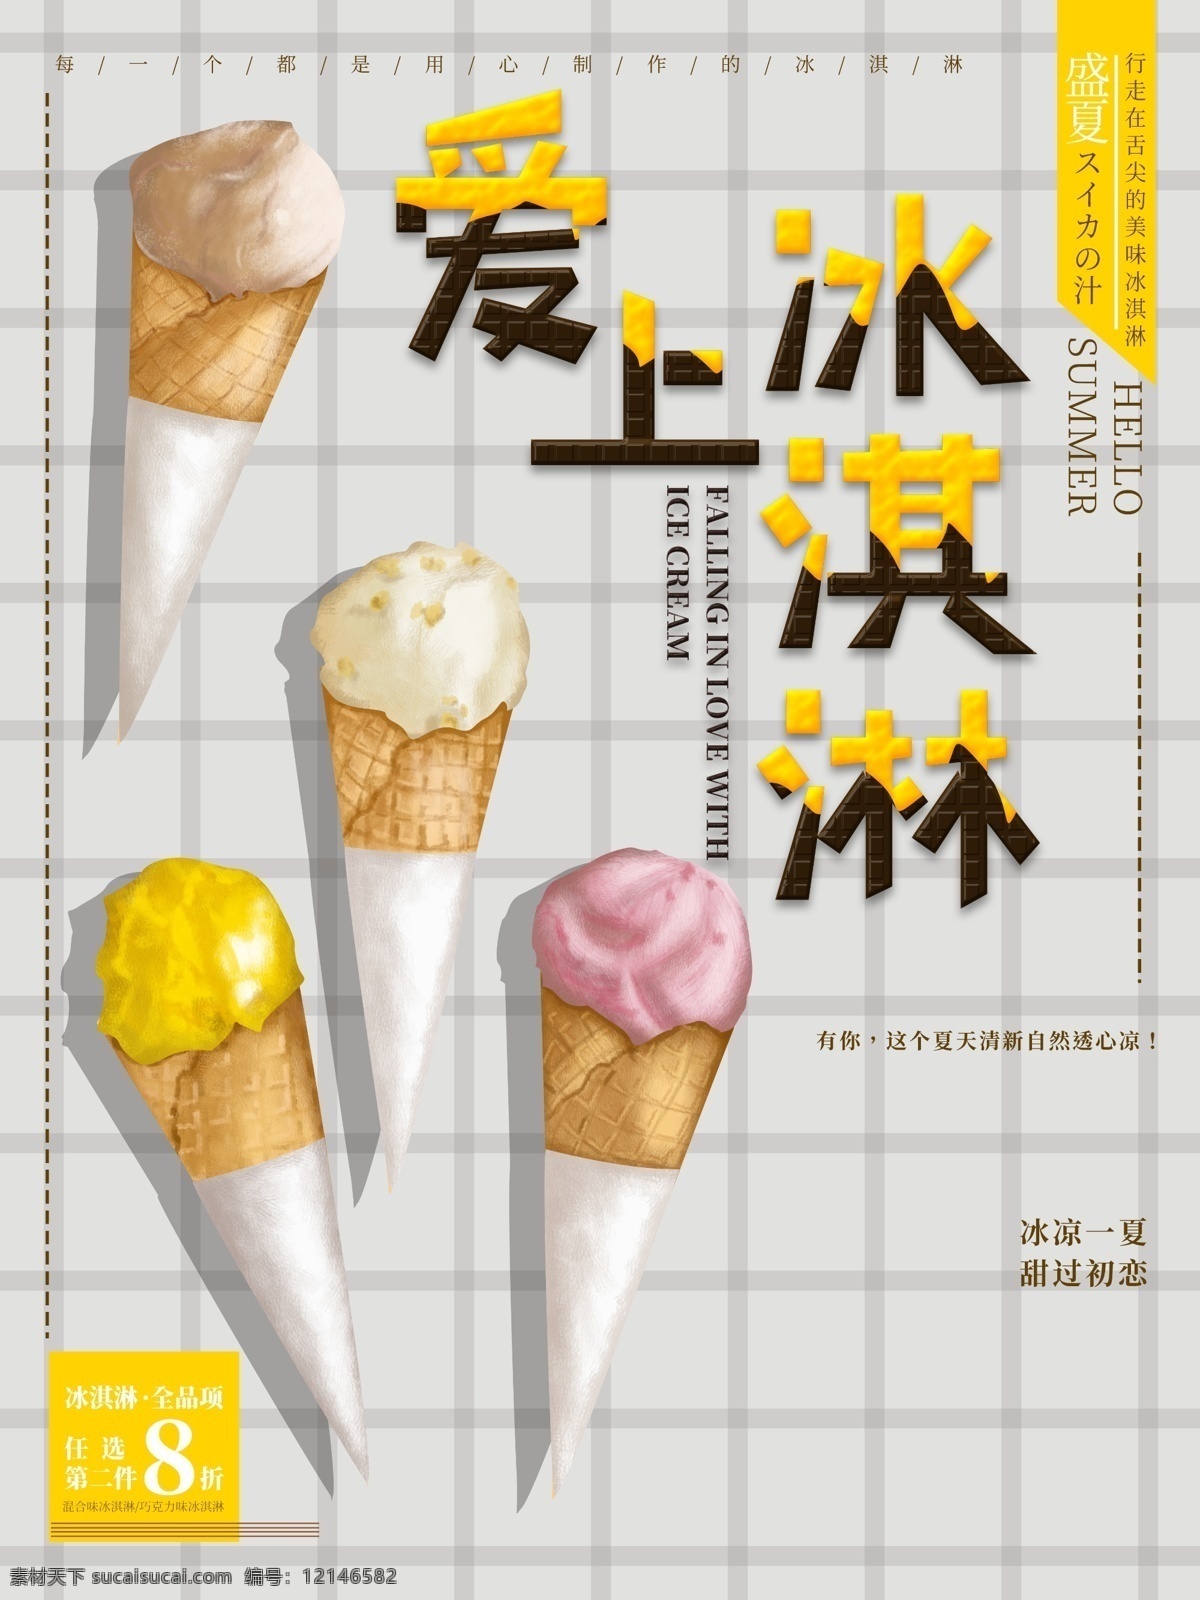 冰淇淋海报 冰淇淋素材 甜品海报 饮品海报 冰淇淋店